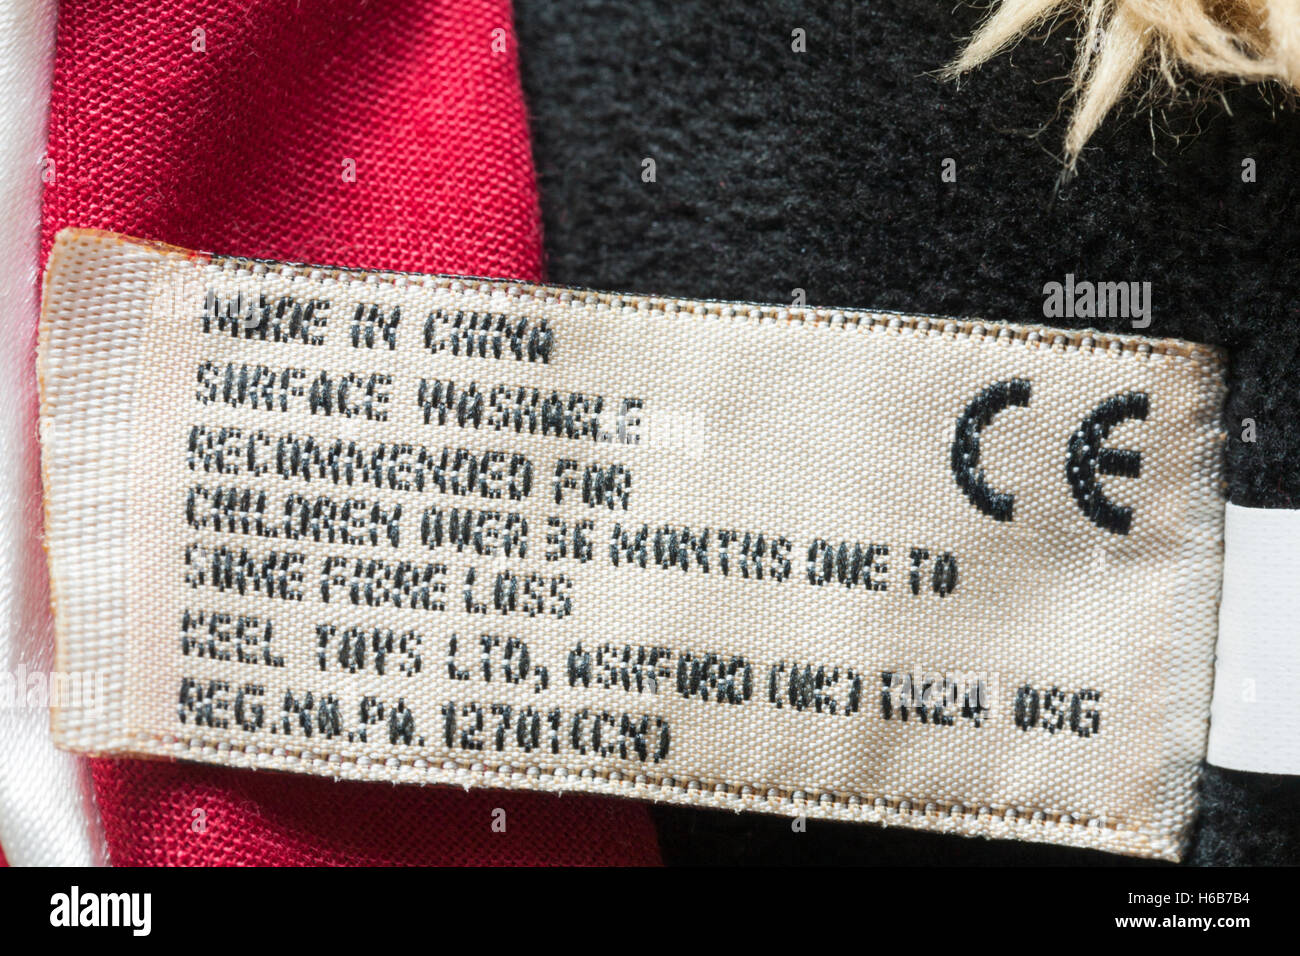 Fabriqué en Chine lavable en surface de l'étiquette quille Toys Ltd guard ours en peluche douce - vendues au Royaume-Uni Royaume-Uni, Grande Bretagne Banque D'Images